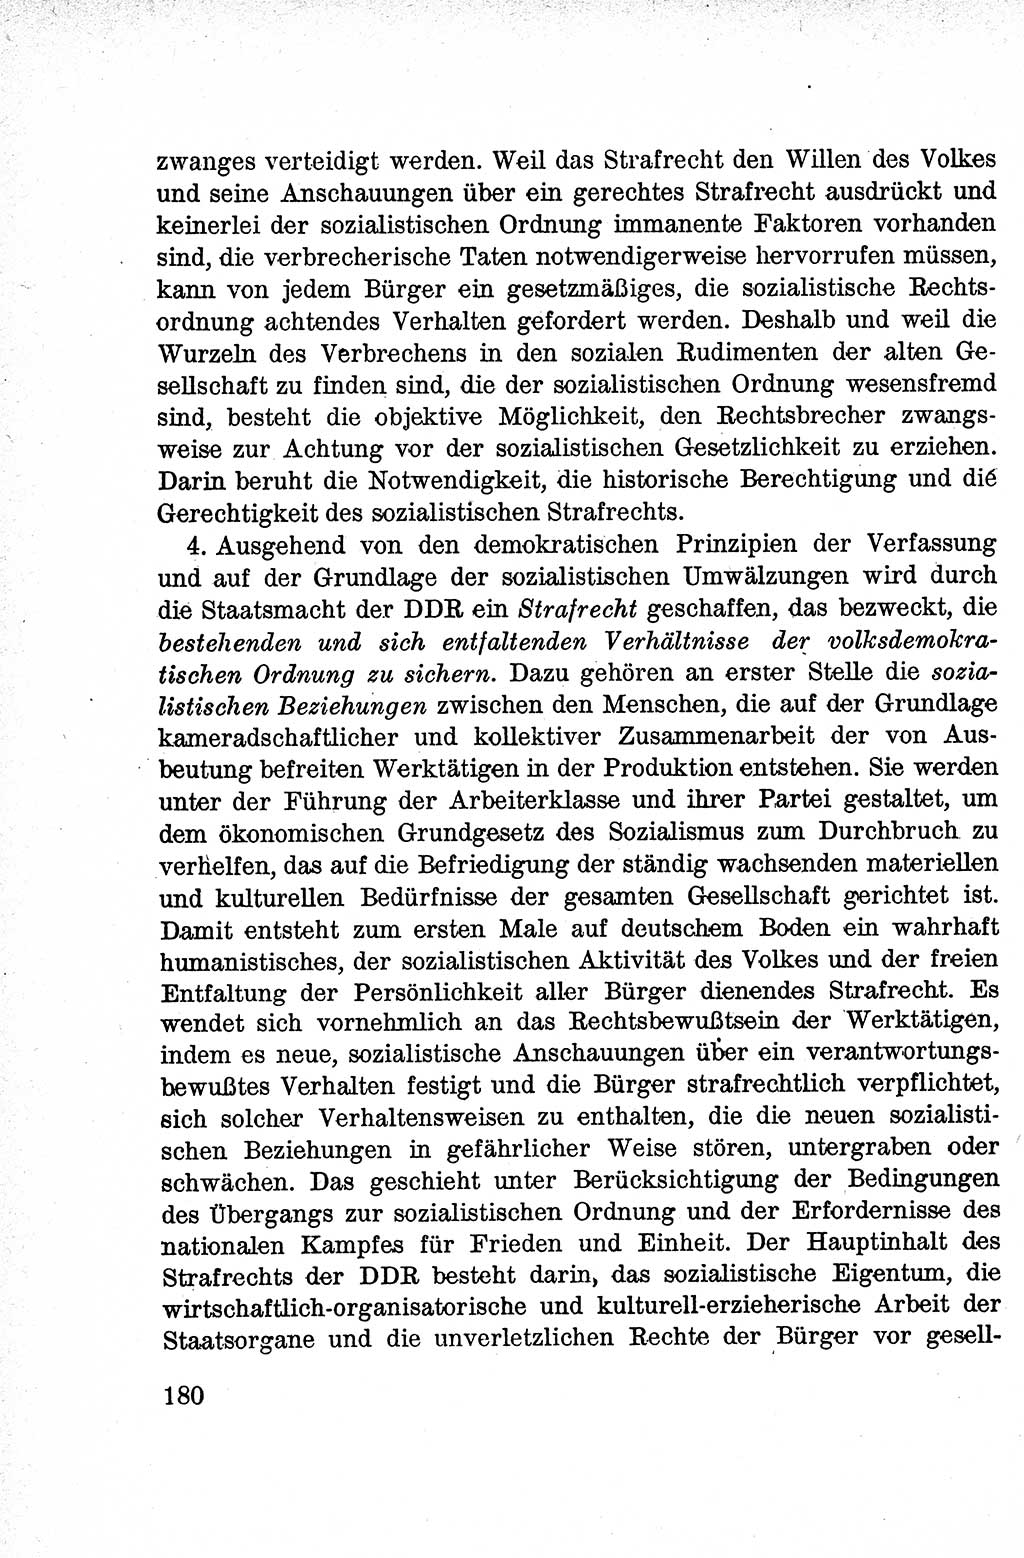 Lehrbuch des Strafrechts der Deutschen Demokratischen Republik (DDR), Allgemeiner Teil 1959, Seite 180 (Lb. Strafr. DDR AT 1959, S. 180)